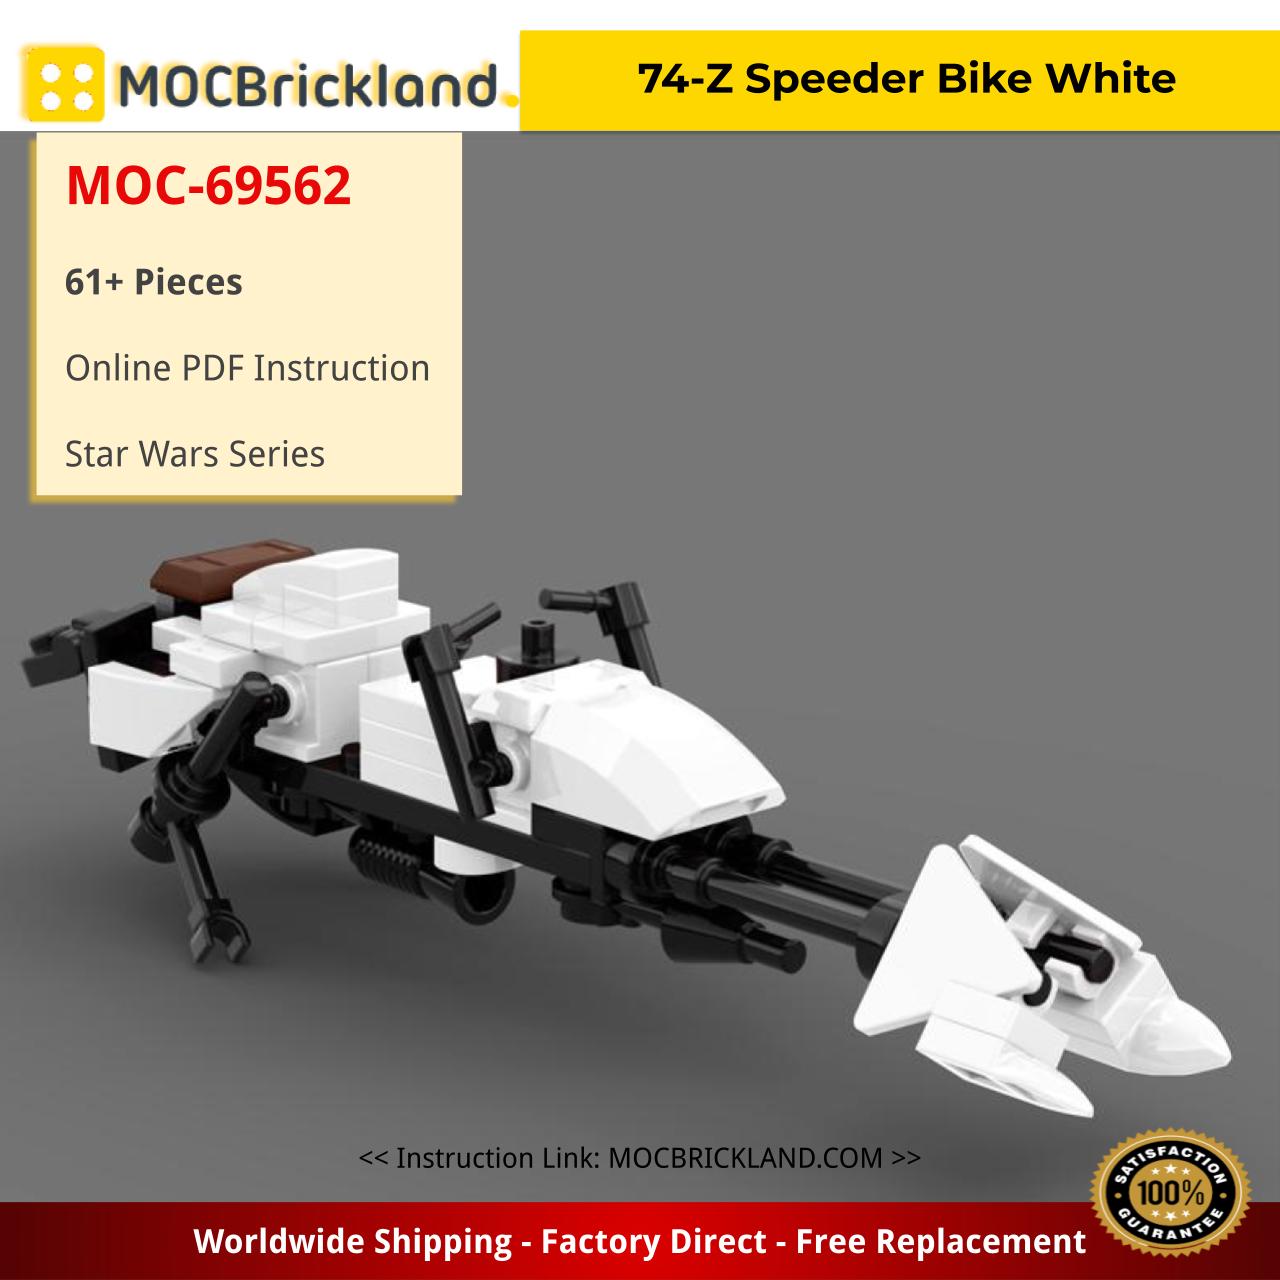 74-Z Speeder Bike White Star Wars MOC-69562 by JohndieRocks with 61 Pieces